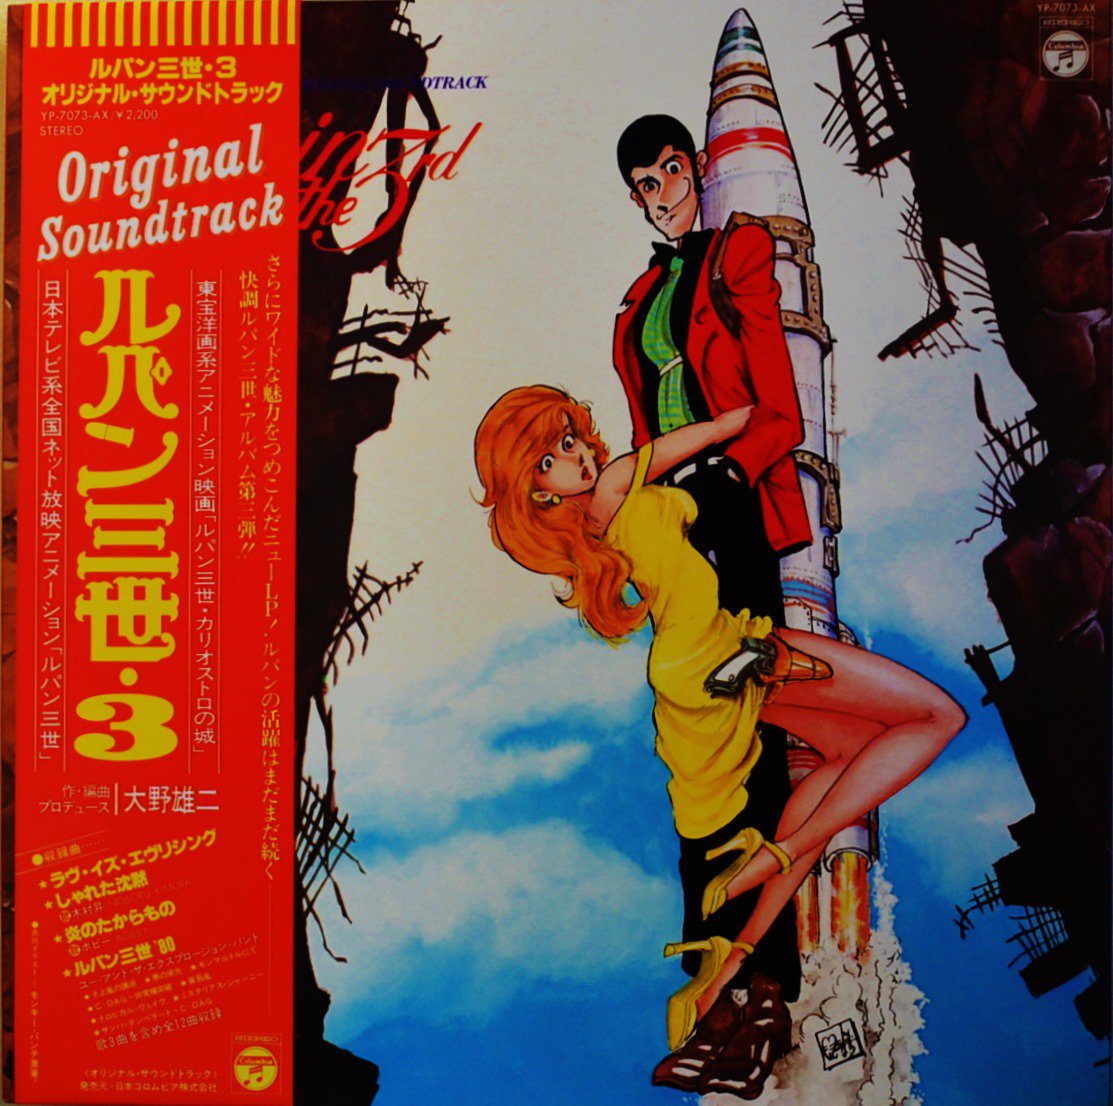 「犬神家の一族」大野雄二 レコード LP サウンド トラック 大野雄二